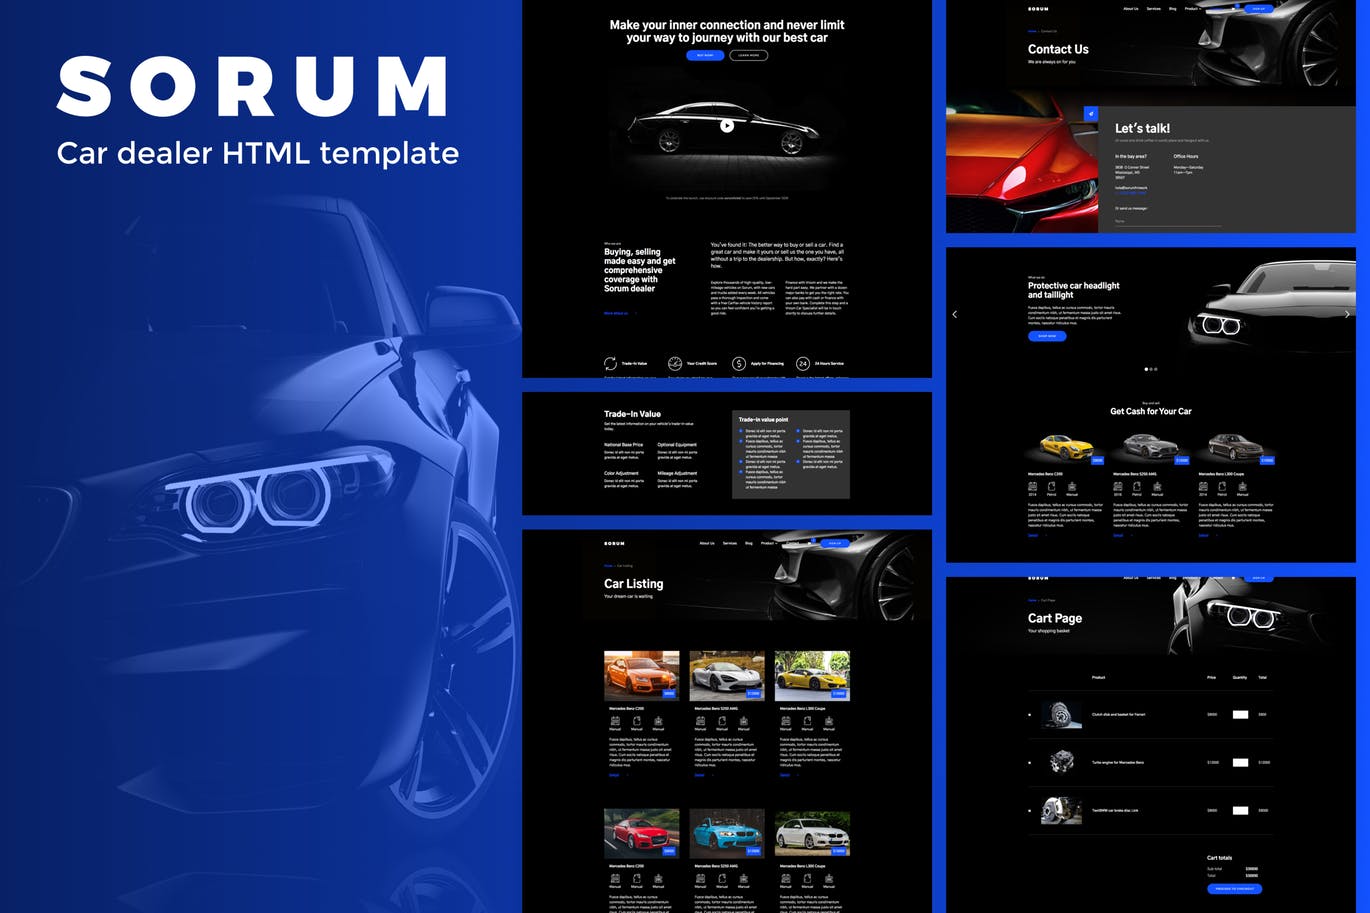 汽车4S经销商/汽车品牌官网HTML模板蚂蚁素材精选 Sorum – Car Dealer HTML Template插图